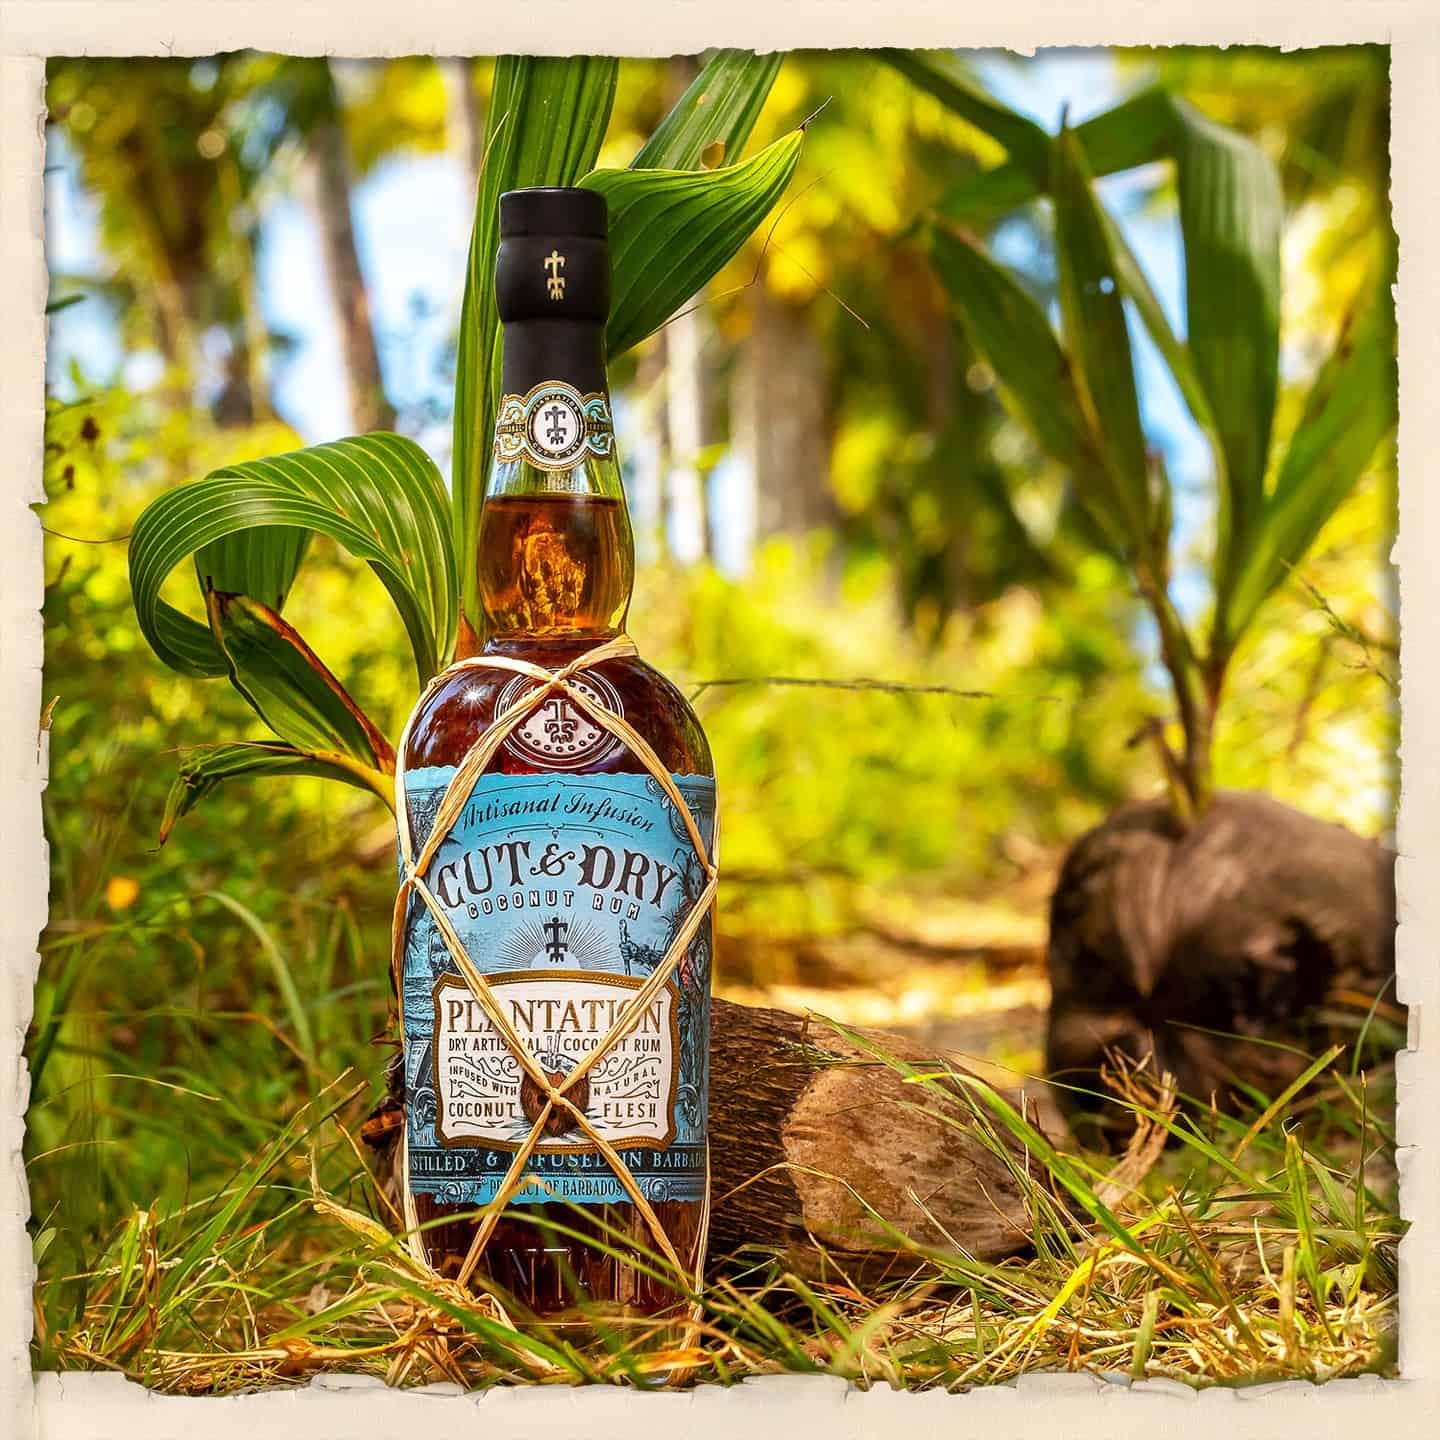 Plantation lance Cut & Dry, un Coconut Rum !